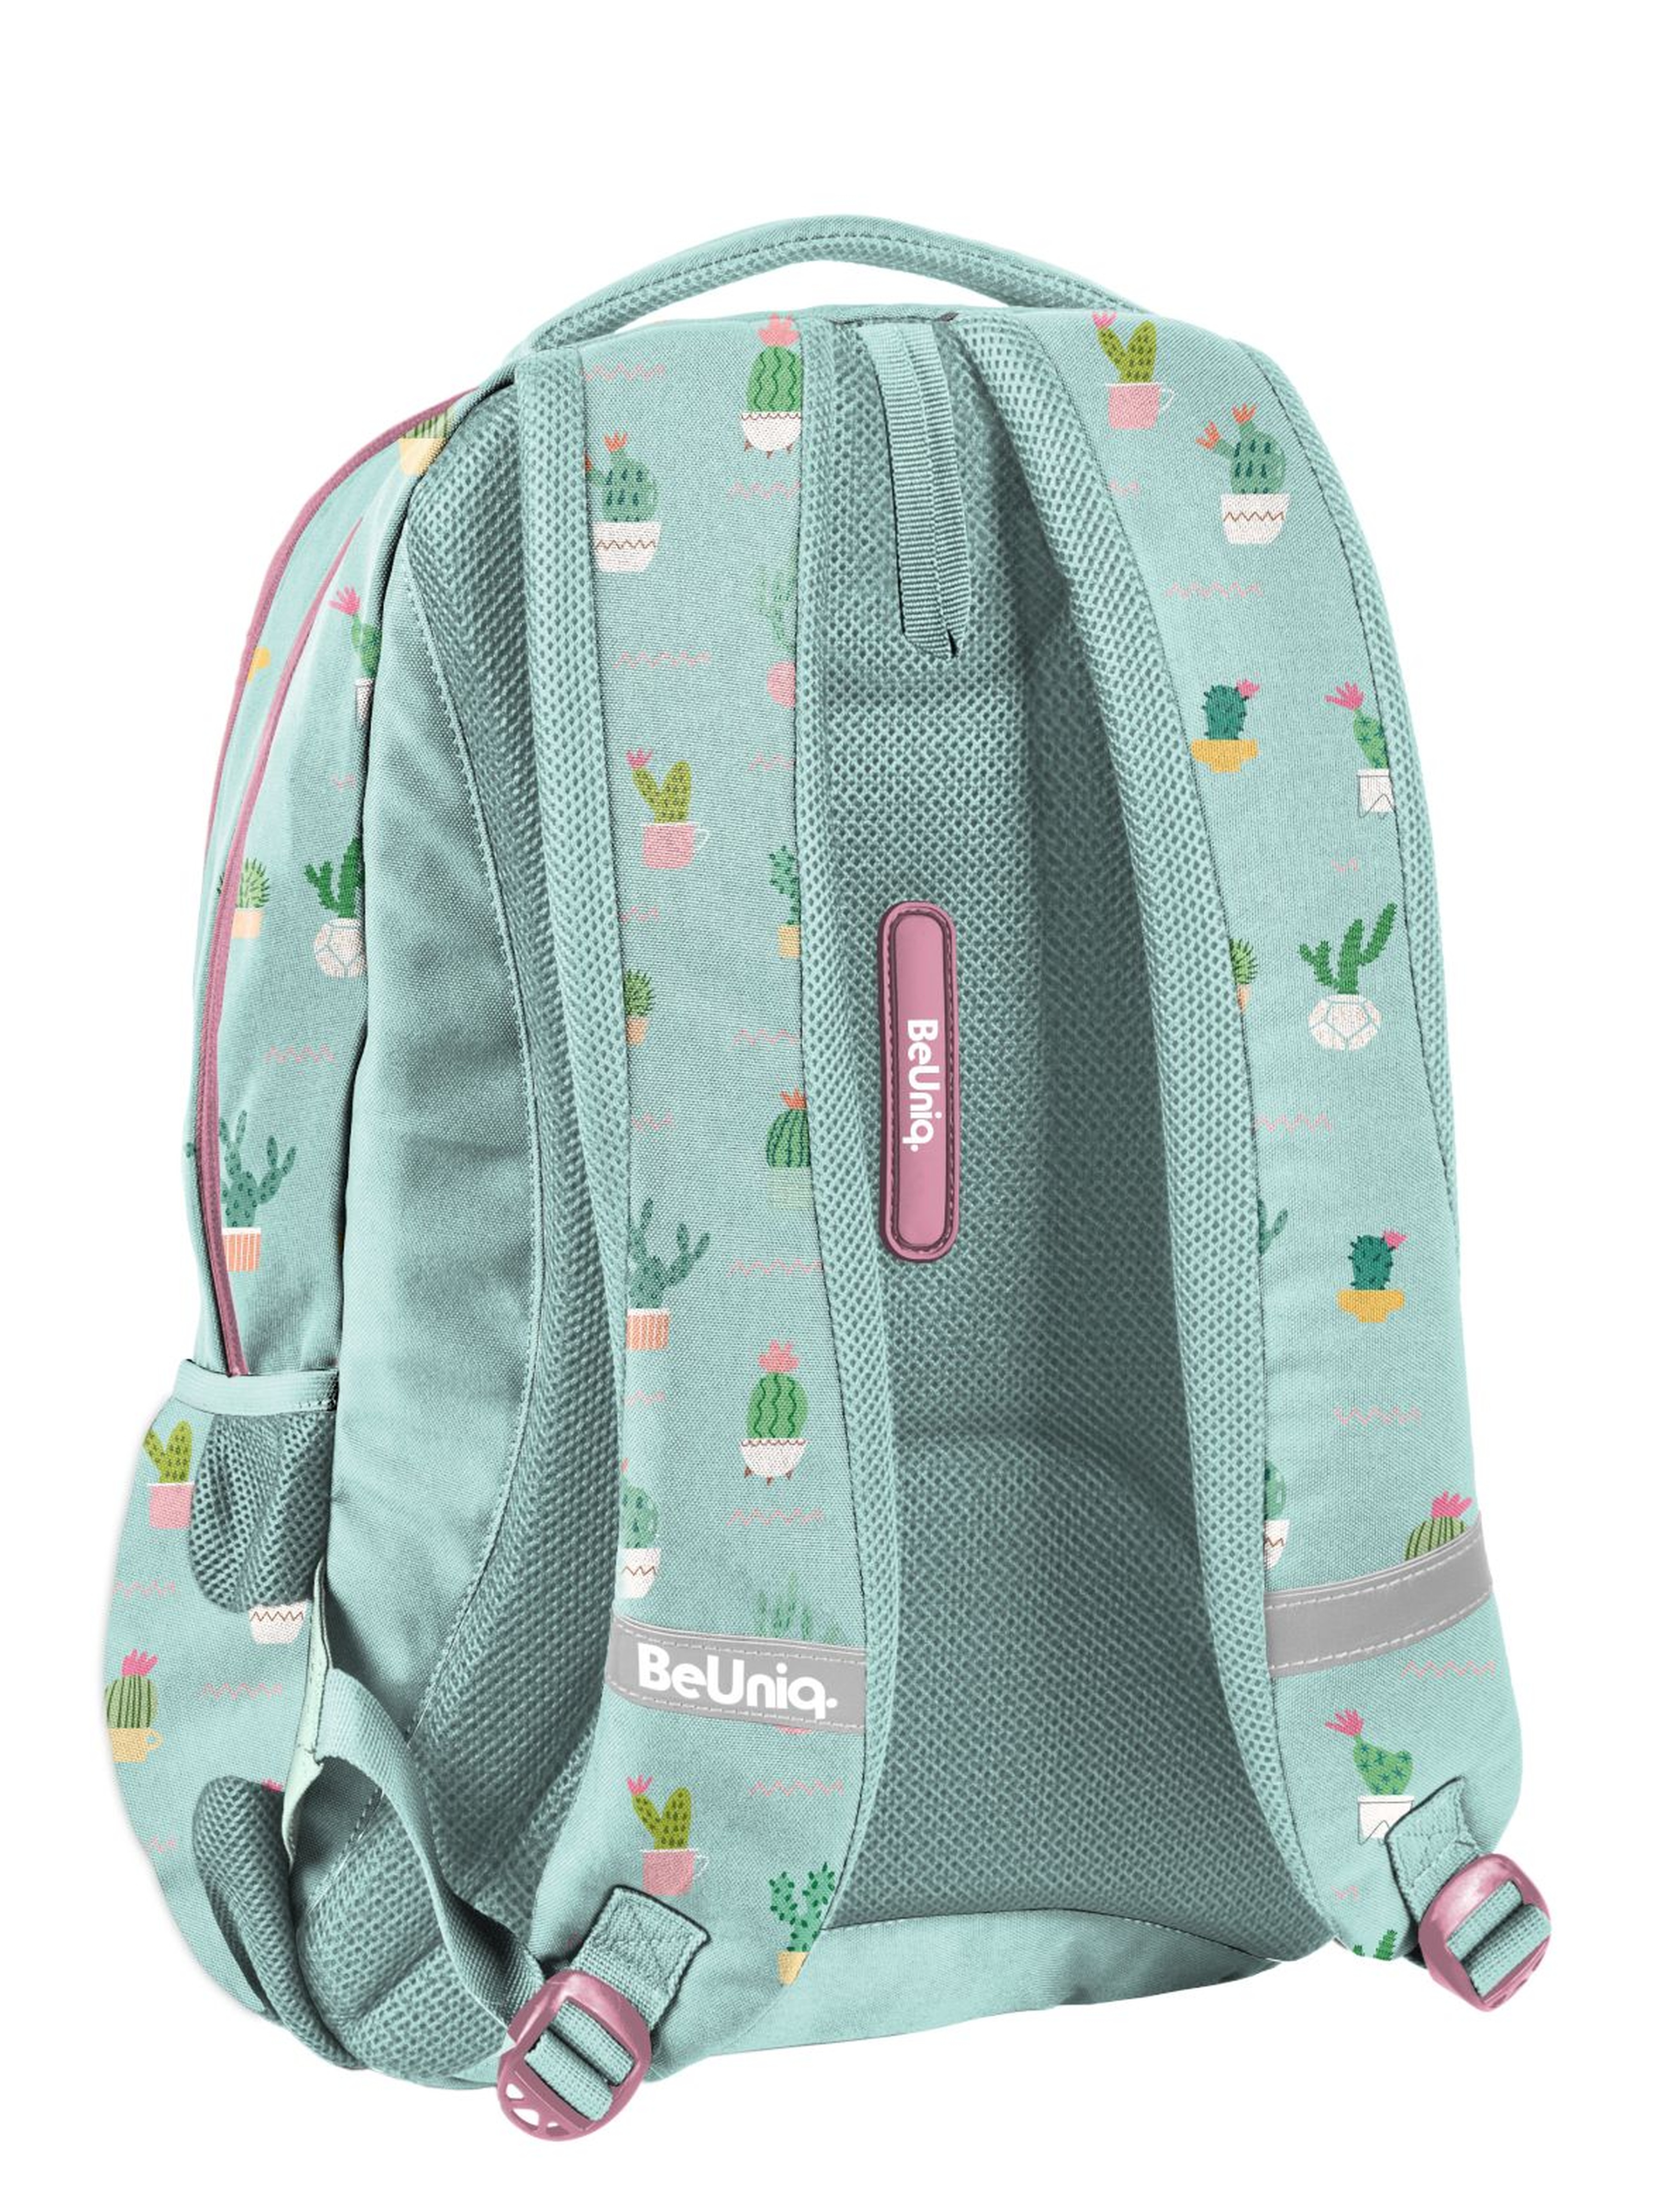 Plecak szkolny dla dziewczynki- niebieski w kaktusy